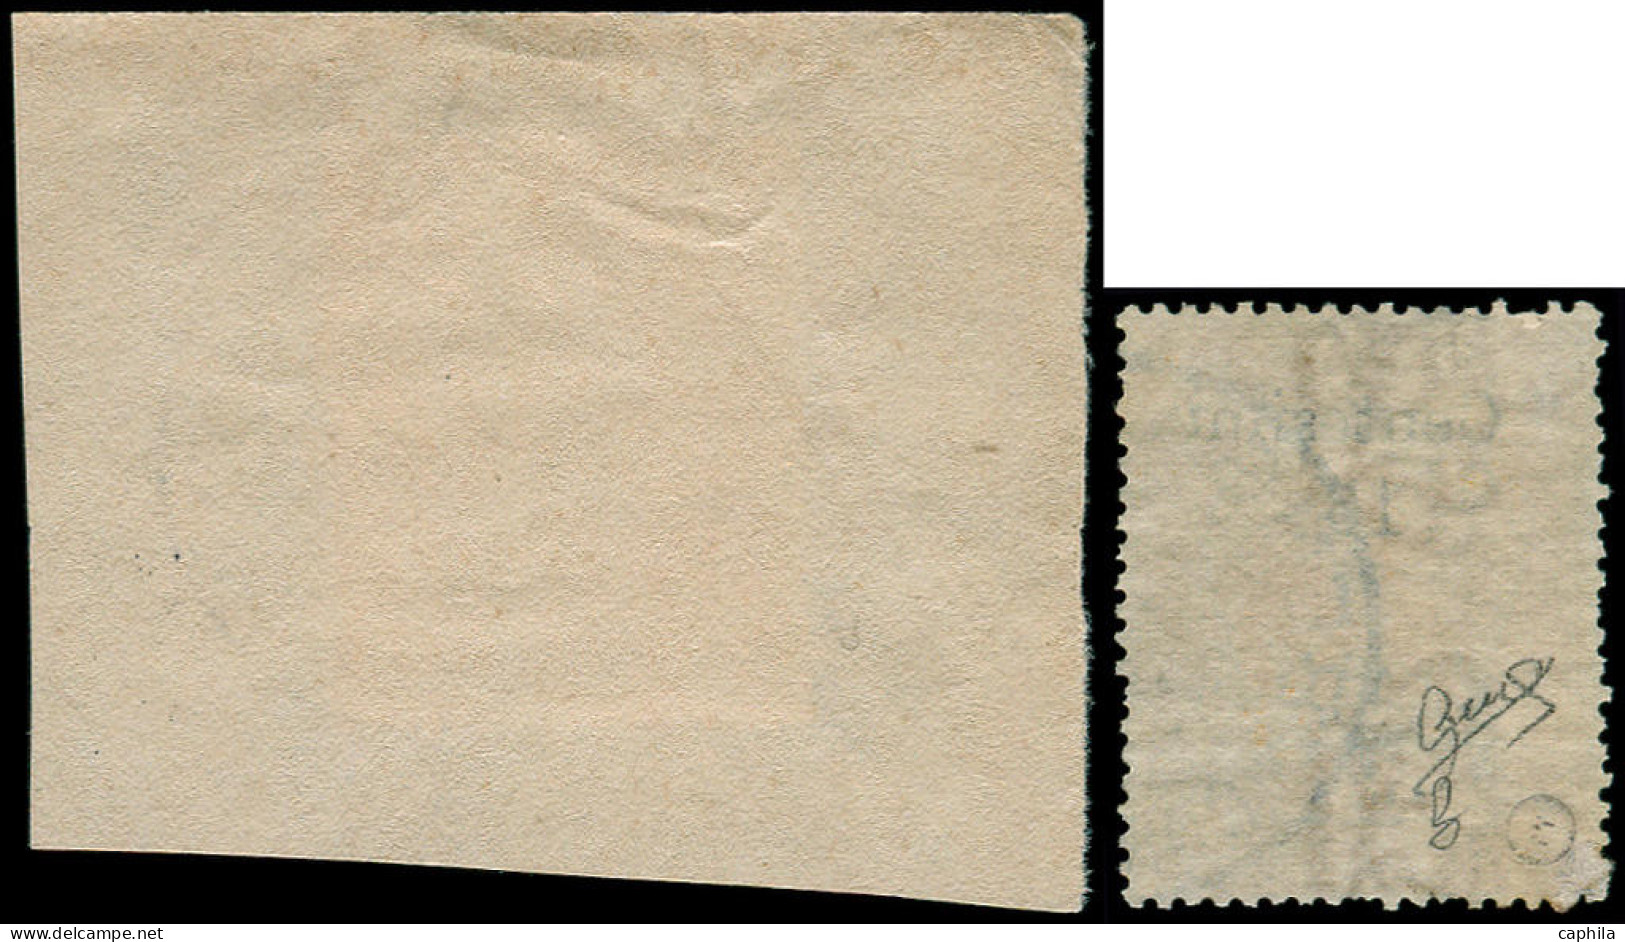 SOMALIE ITALIENNE Poste O - 8/9, Certificat Biondi, 9 Sur Fragment: Timbres De 1903 Surchargés (Sas. 8/9) - Cote: 2200 - Somalie